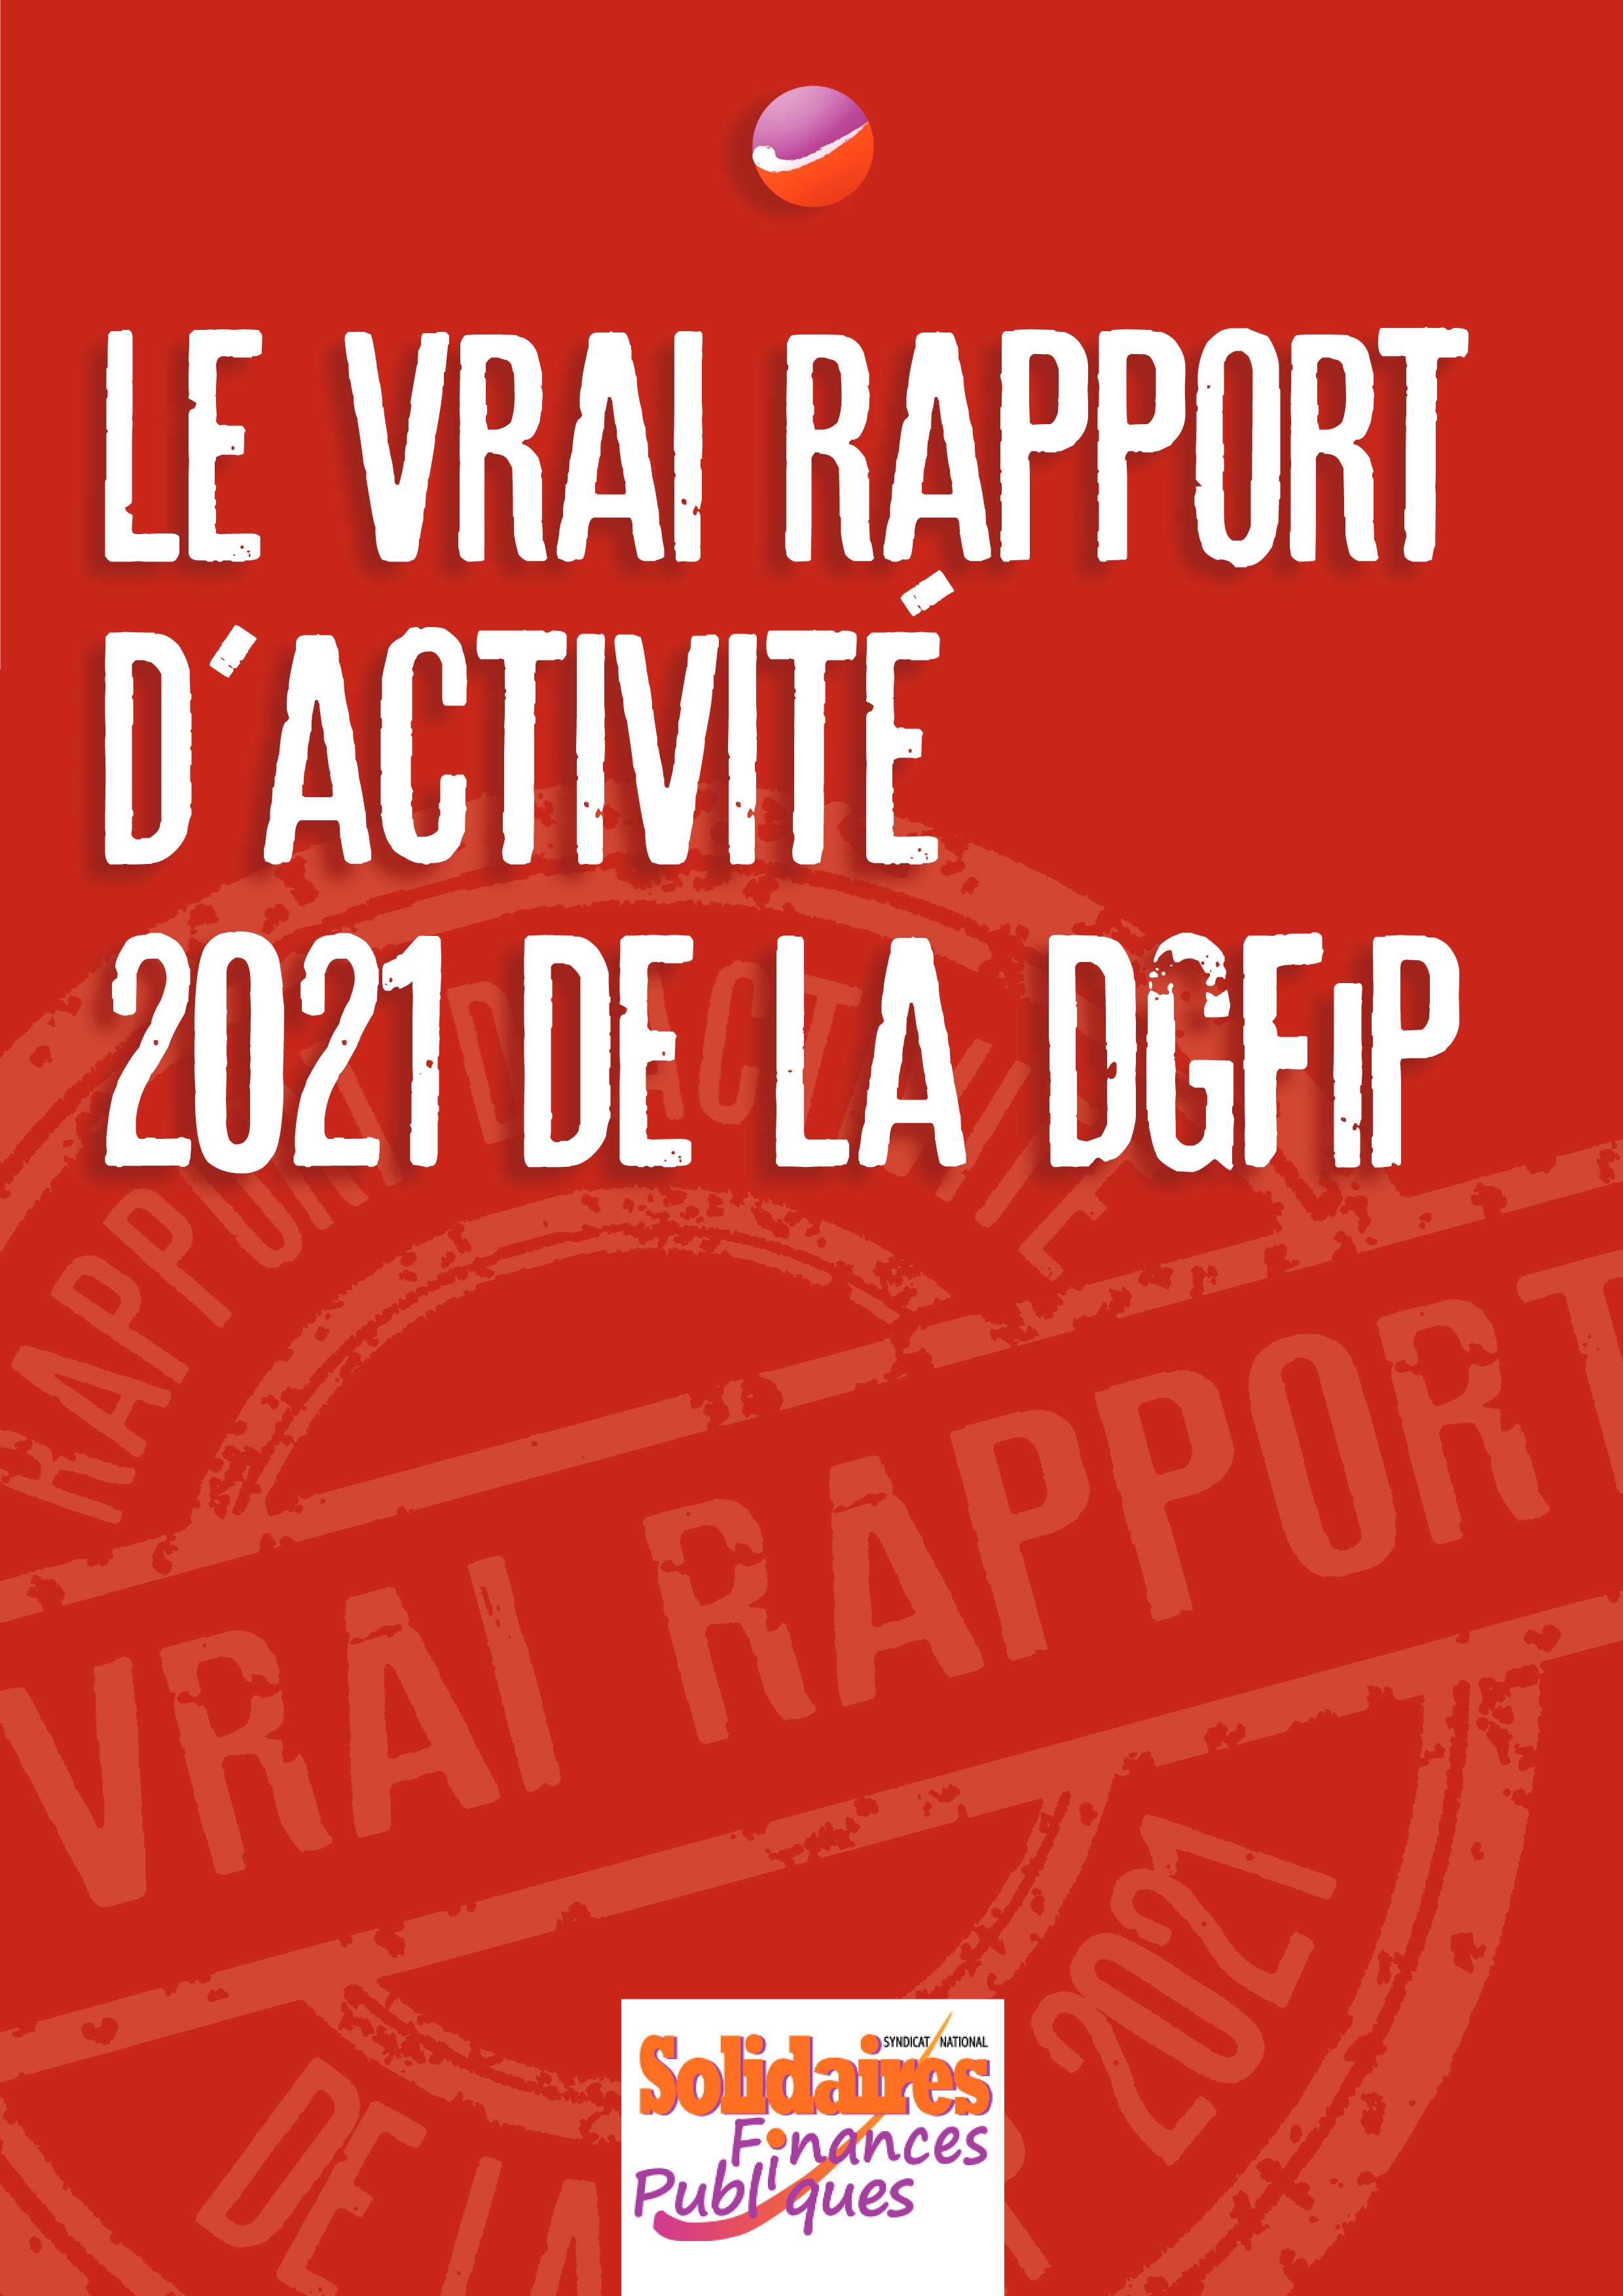 Le vrai rapport d'activité 2021 de la DGFiP